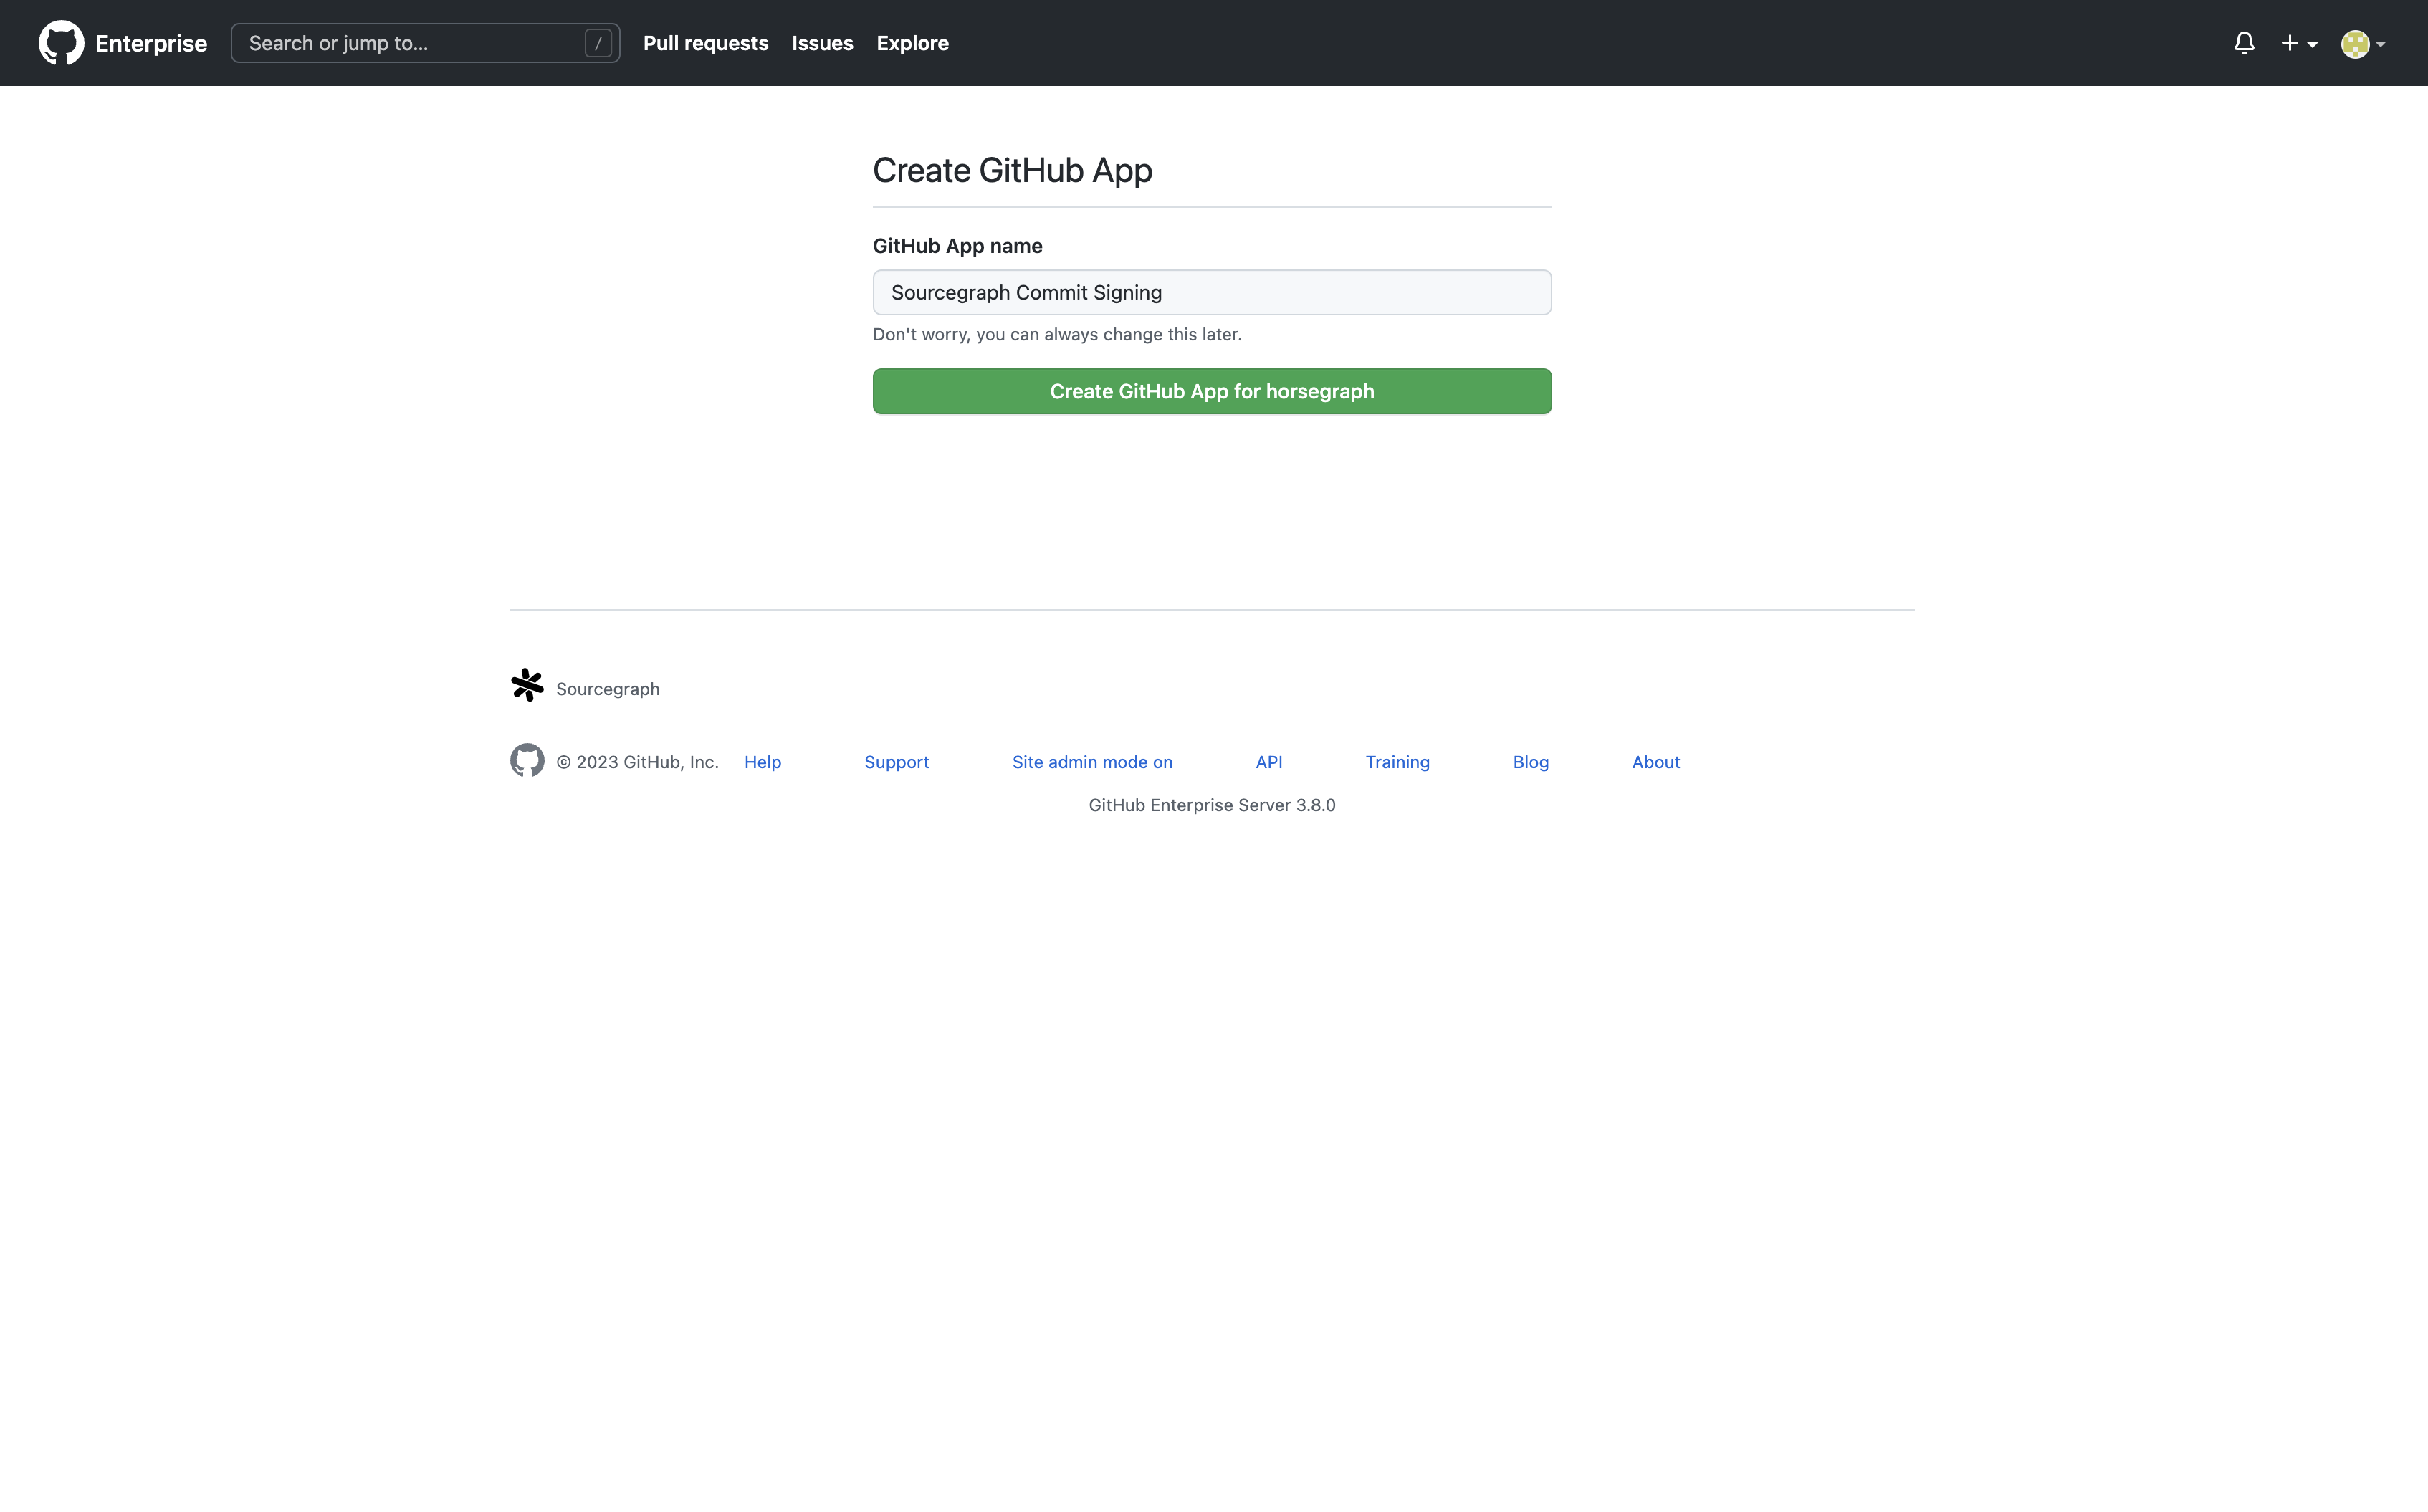 The GitHub App creation page on GitHub